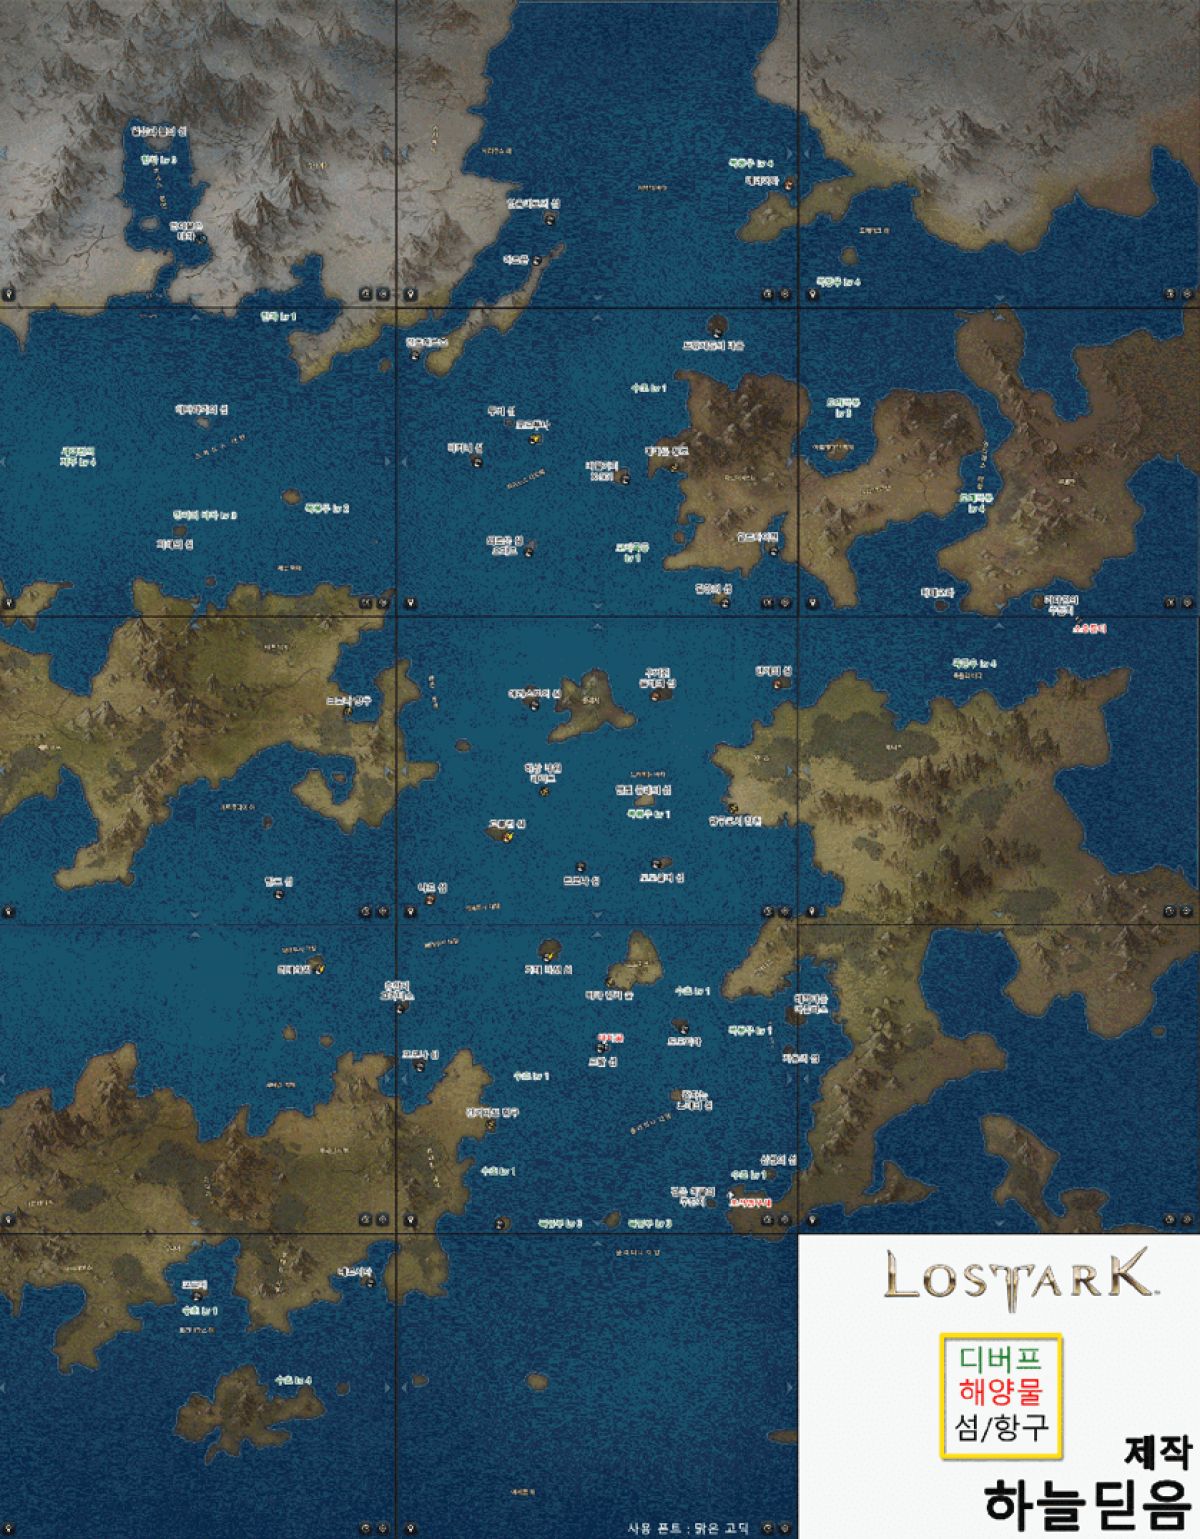 Обзор Lost Ark: фото-отчёт с ЗБТ2 от КМ Риша